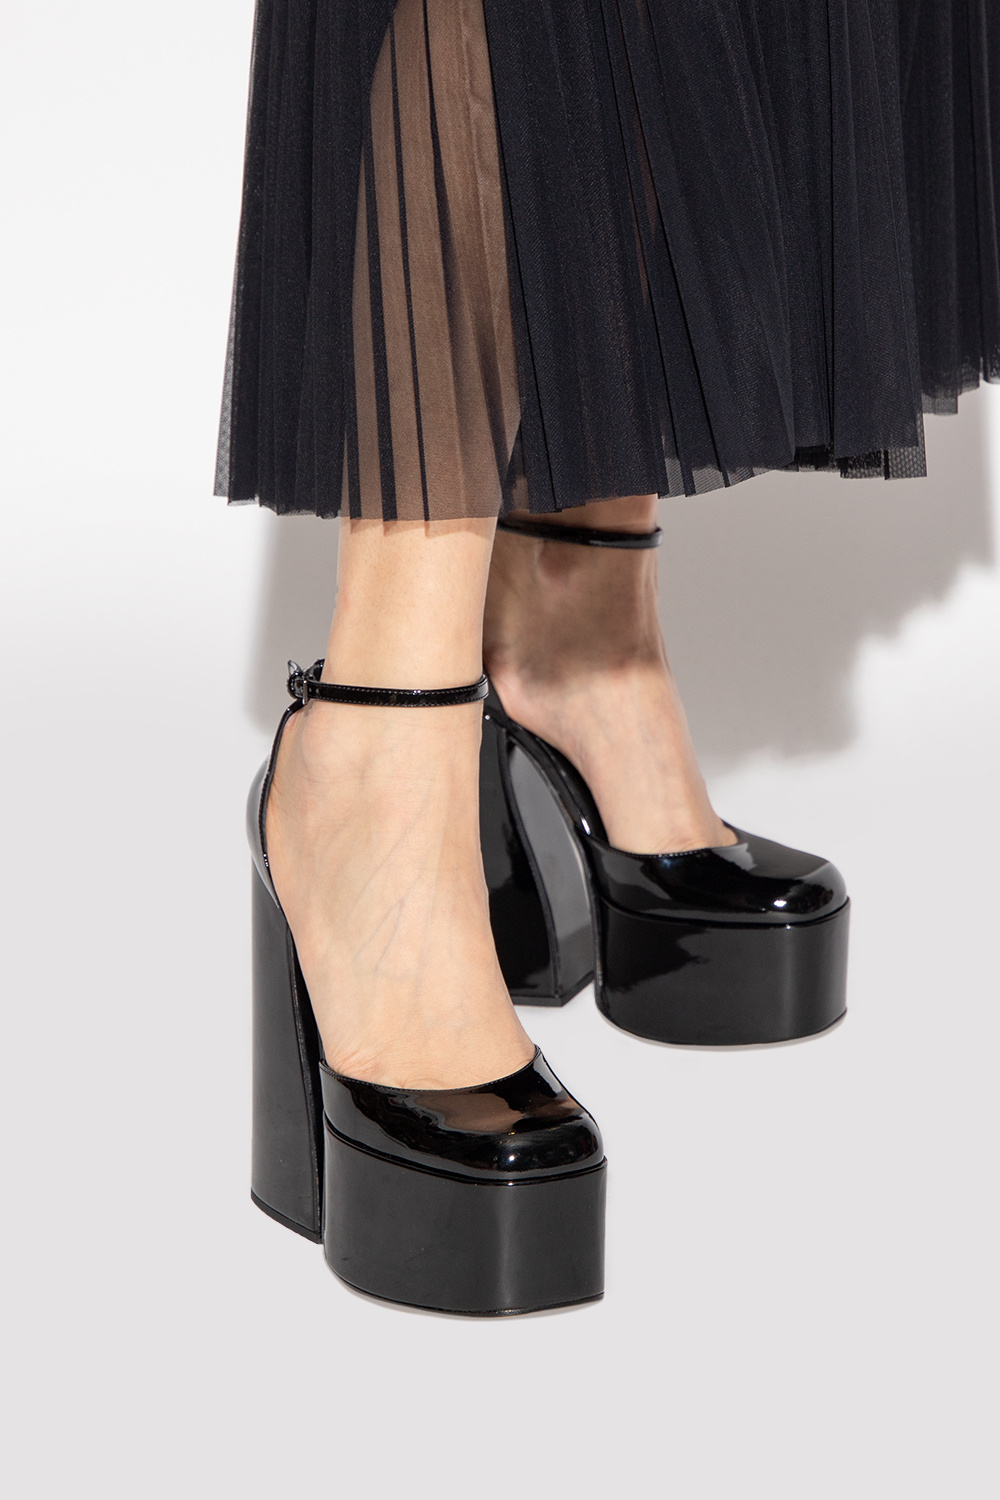 Le Silla ‘Nikki’ platform shoes